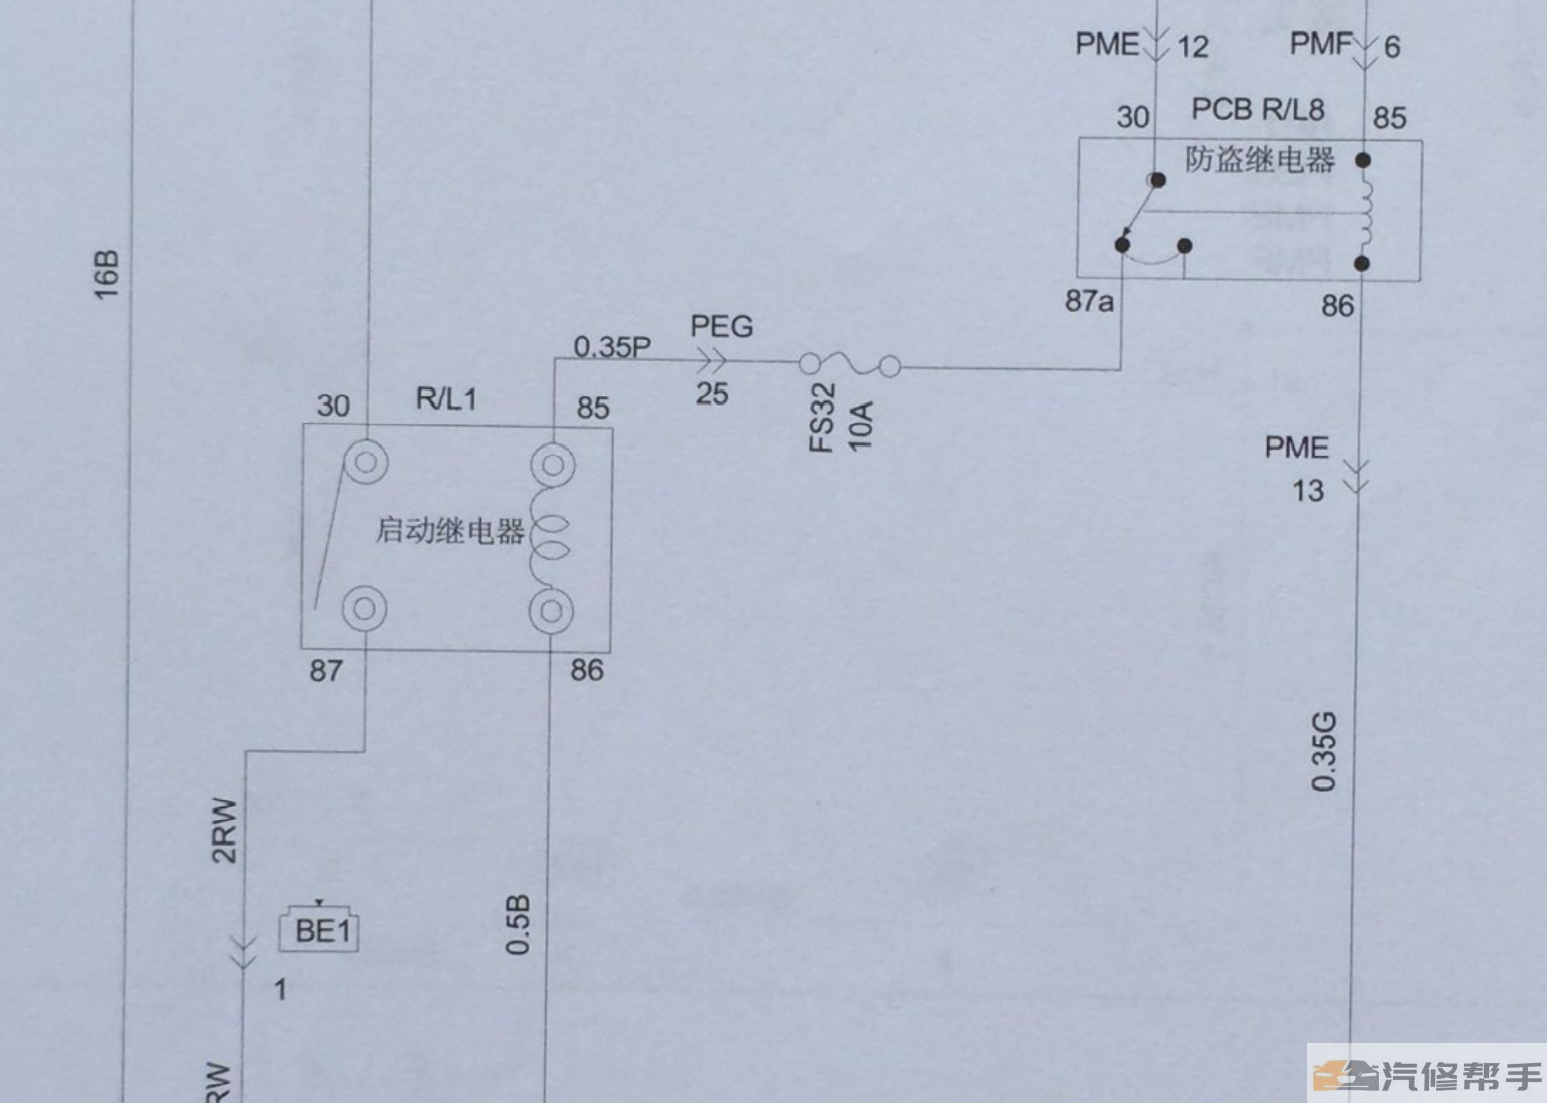 2016年款江淮瑞风S3二代电路图（增刊）线路图资料下载